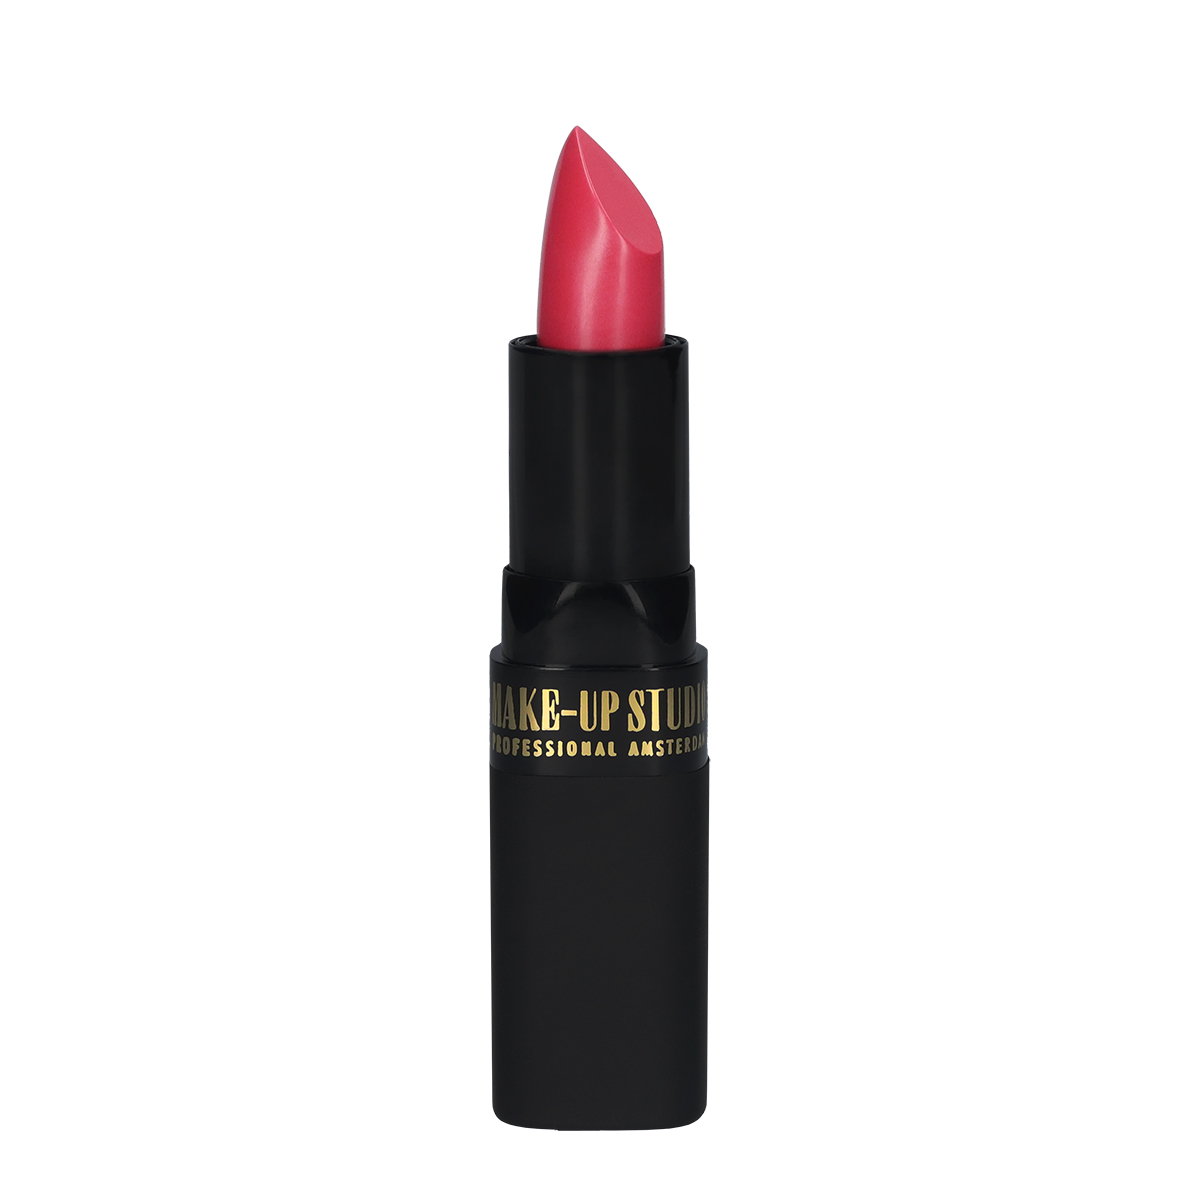 Make-up Studio Lipstick - 78